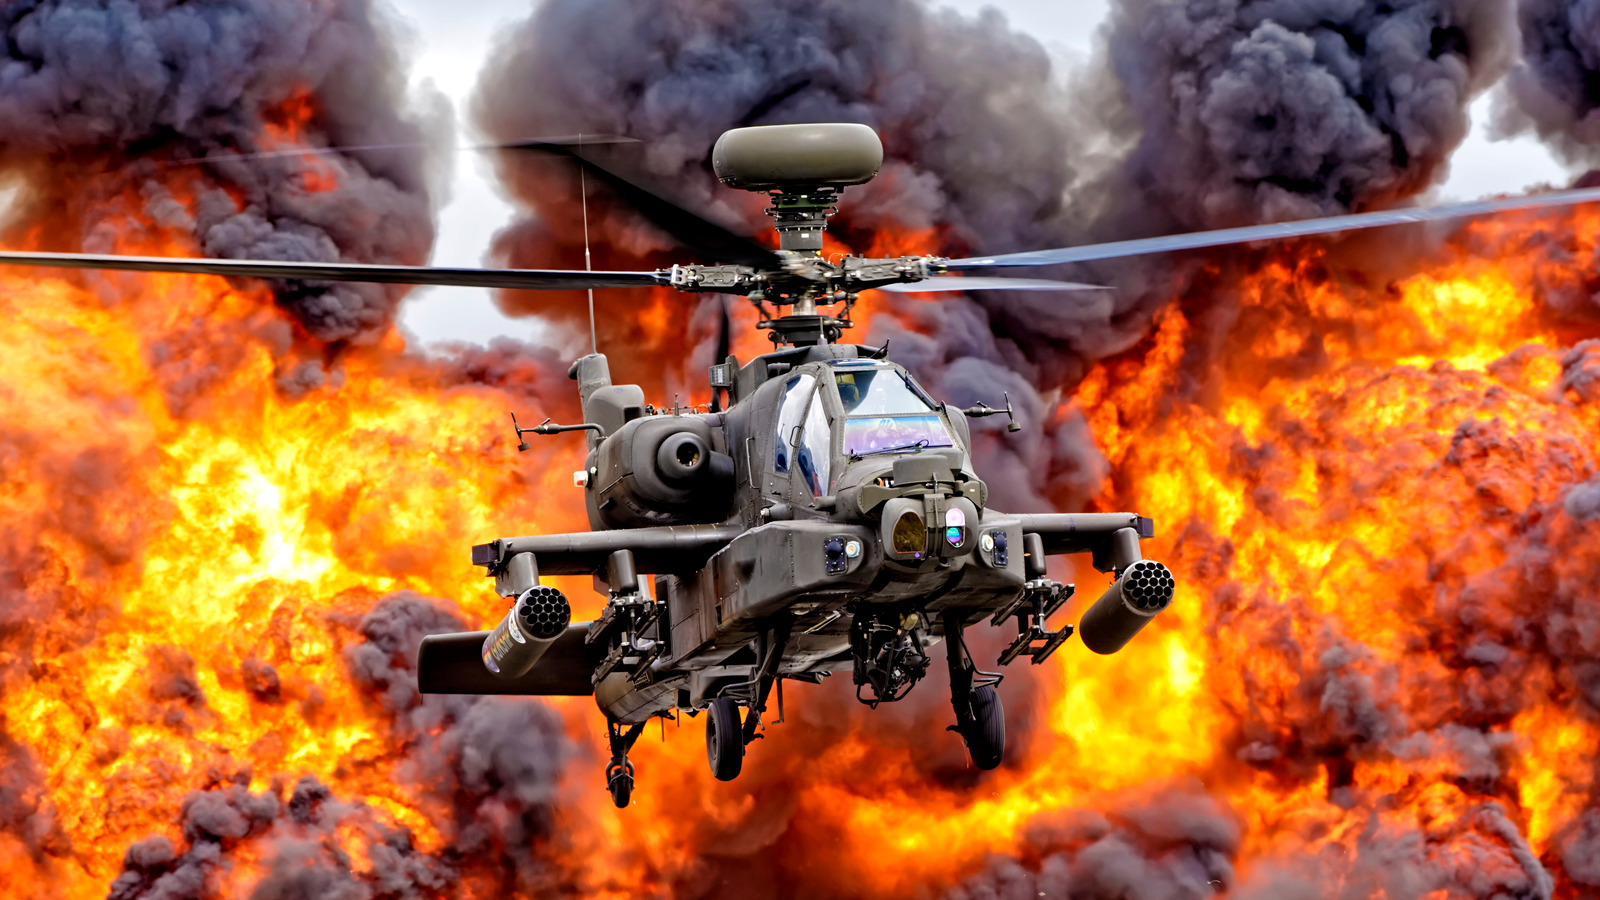 ۱۲ بهترین هلیکوپتر تهاجمی که تا به حال در جنگ استفاده شده است، رتبه بندی شده است